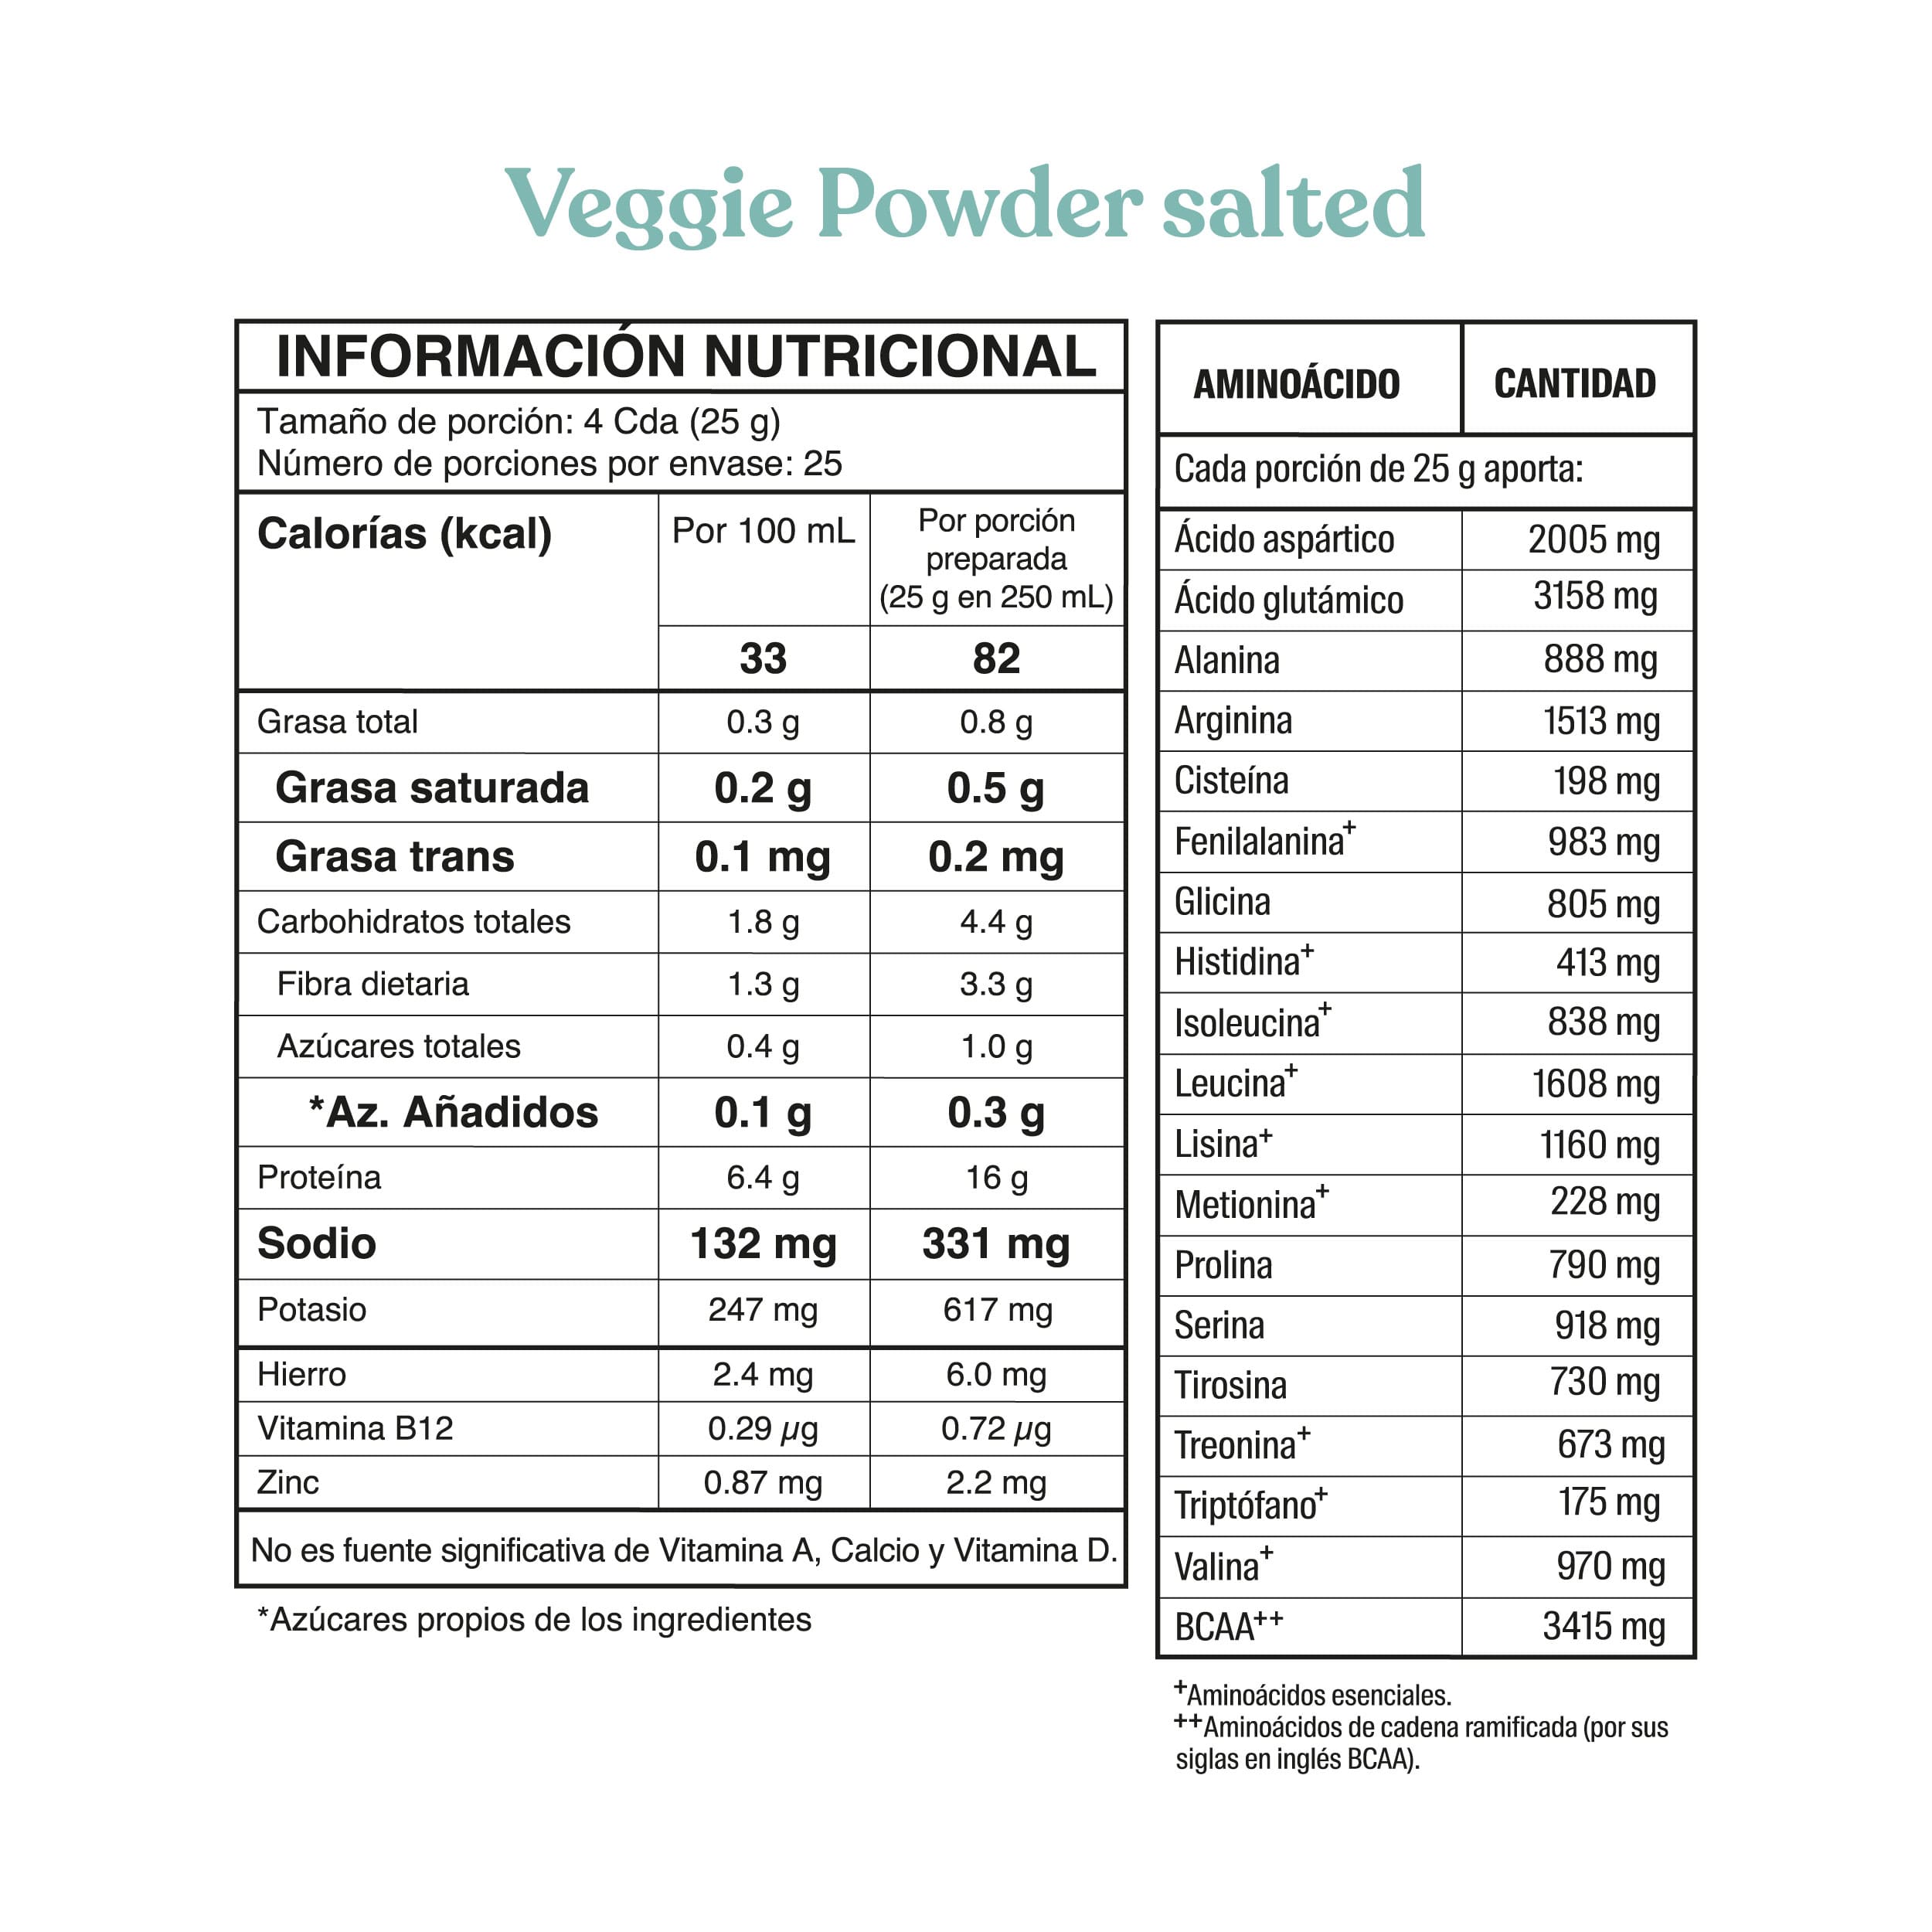 Veggie salted powder